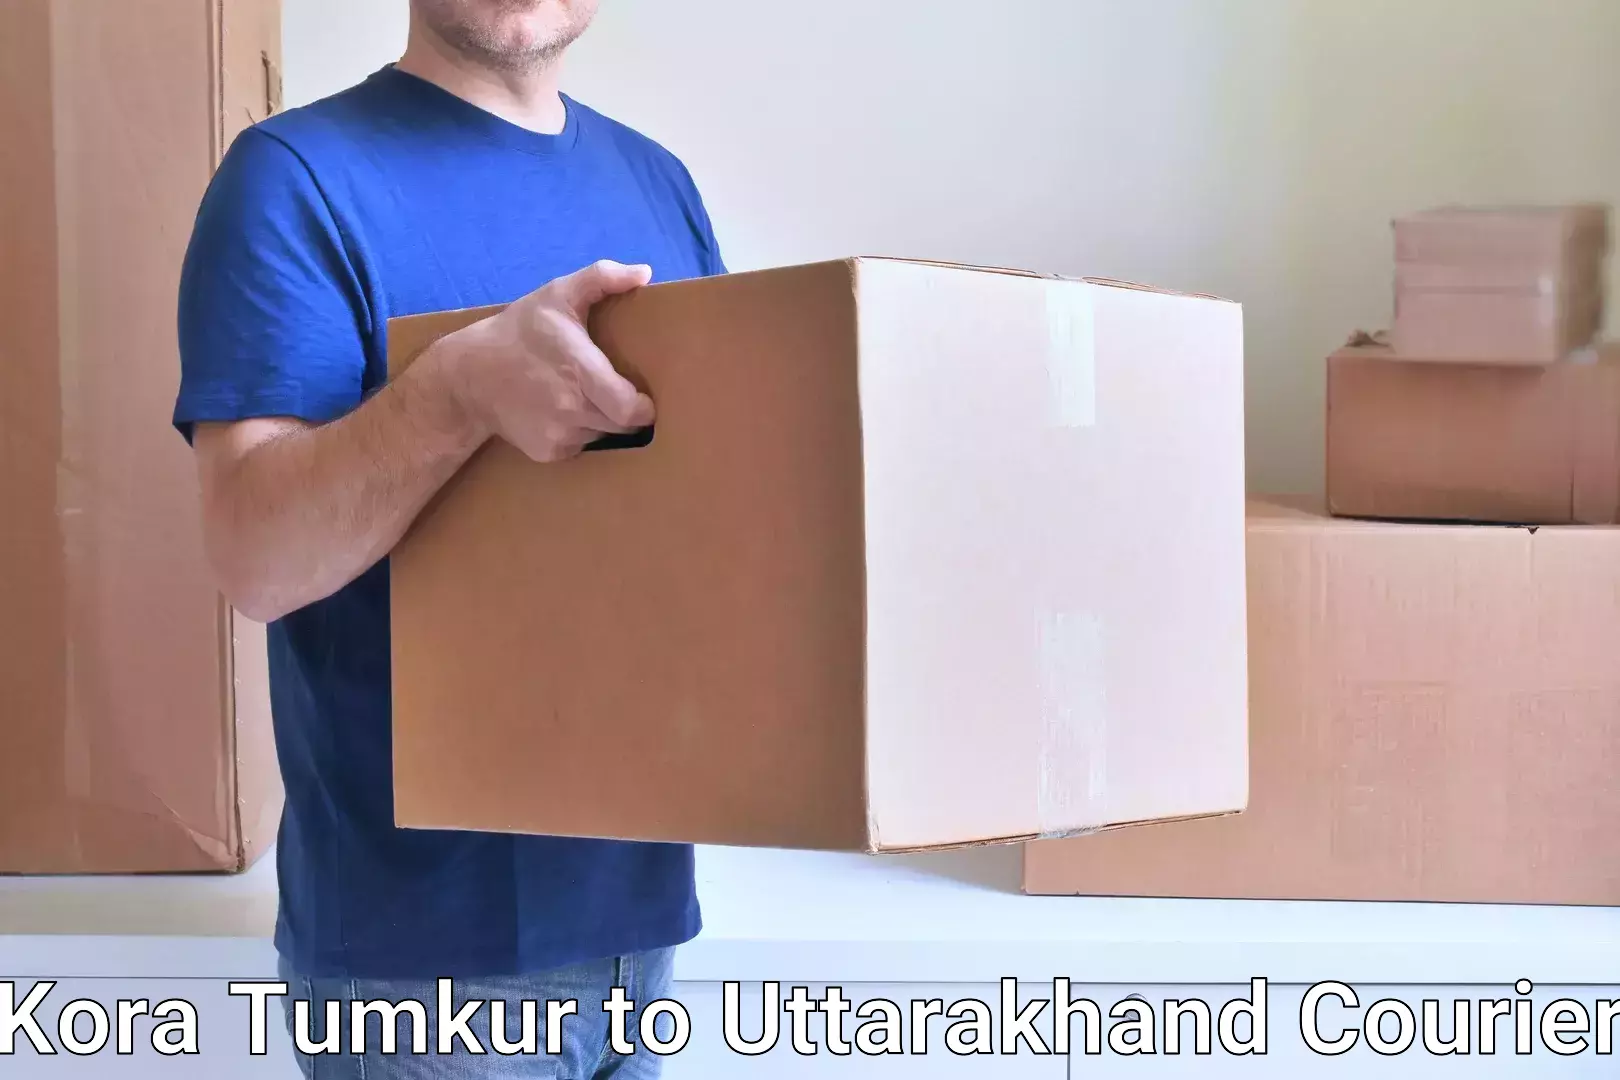 Efficient parcel tracking Kora Tumkur to Tehri Garhwal